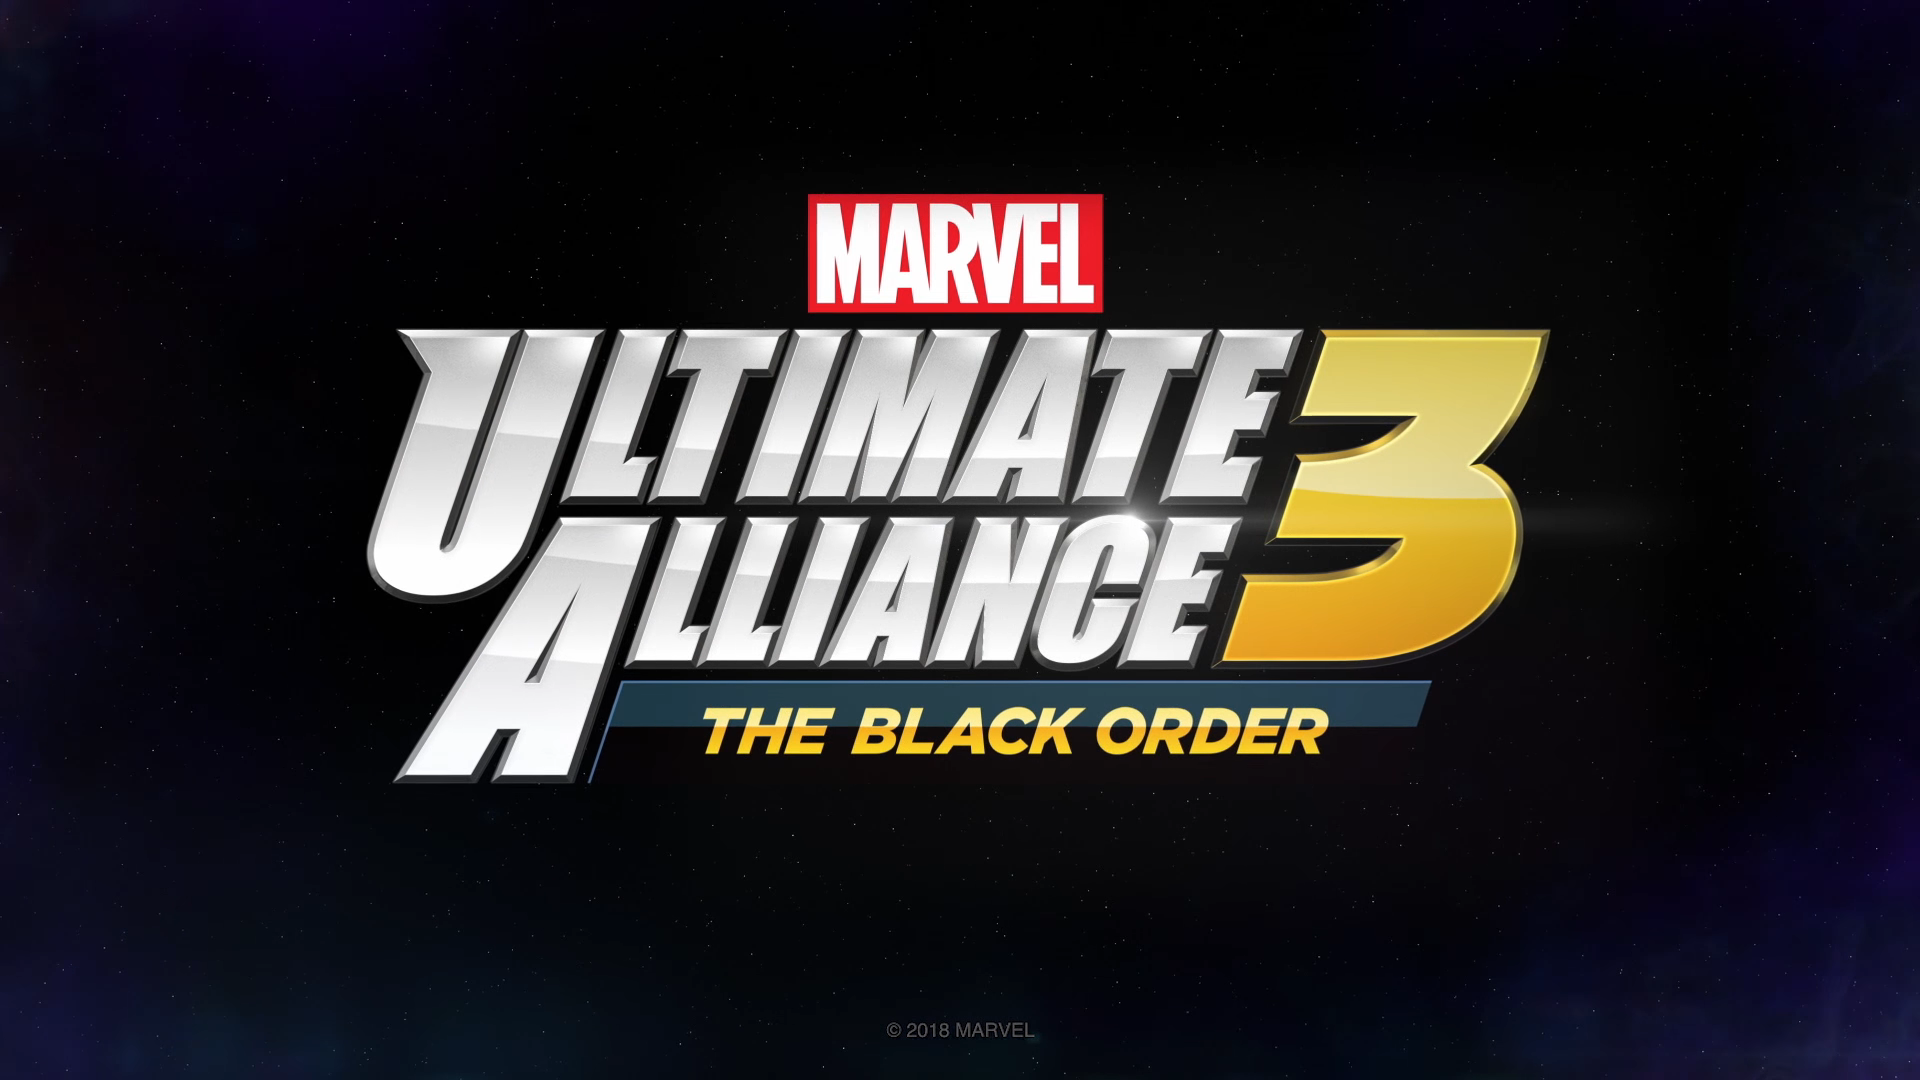 More Details For Marvel Ultimate Alliance 3 The Black Order